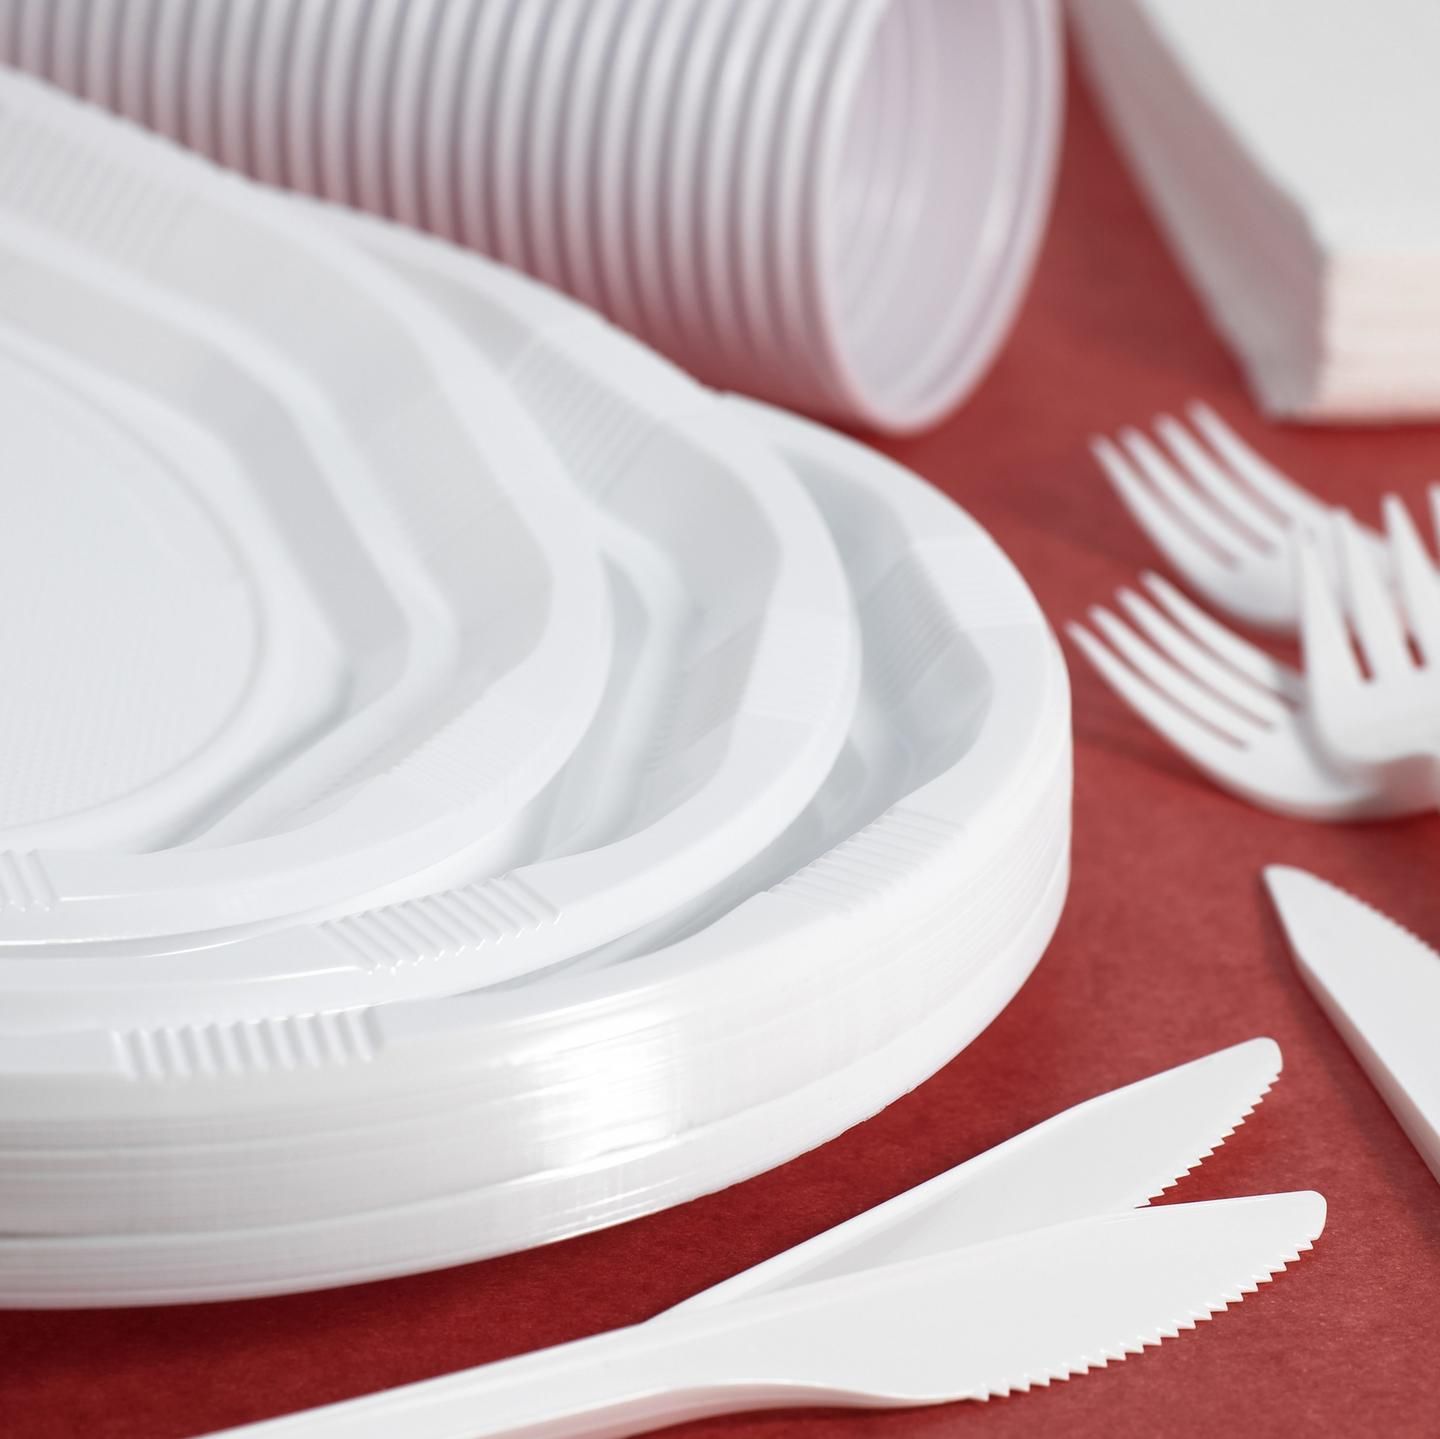 Купить одноразовую посуду пластиковую. Одноразовая посуда. Посуда одноразовая пластиковая. Одноразовые тарелки. Белая пластиковая посуда.